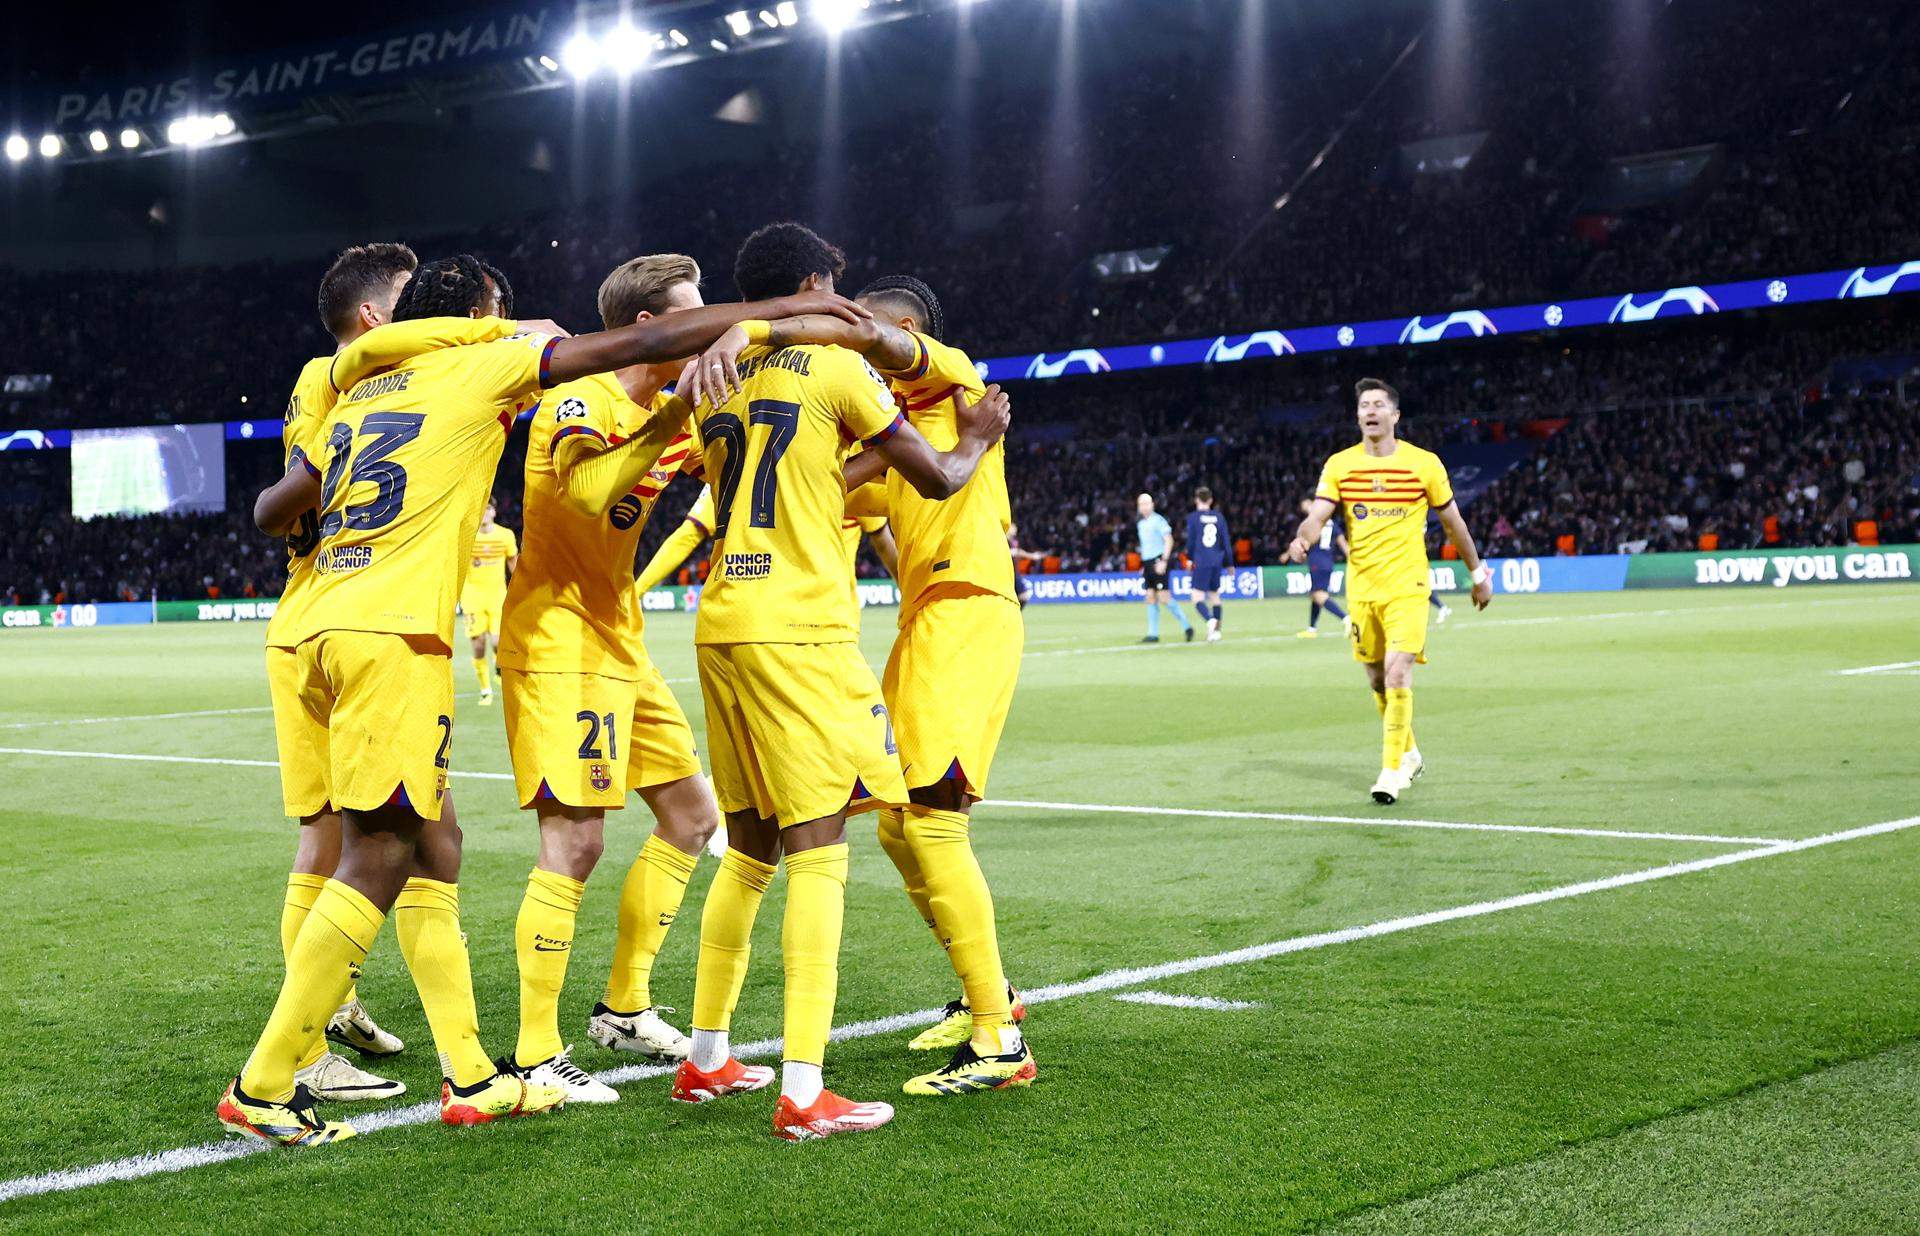 El Barça conquista París con una épica victoria contra el PSG en la ida de los cuartos de la Champions (2-3)